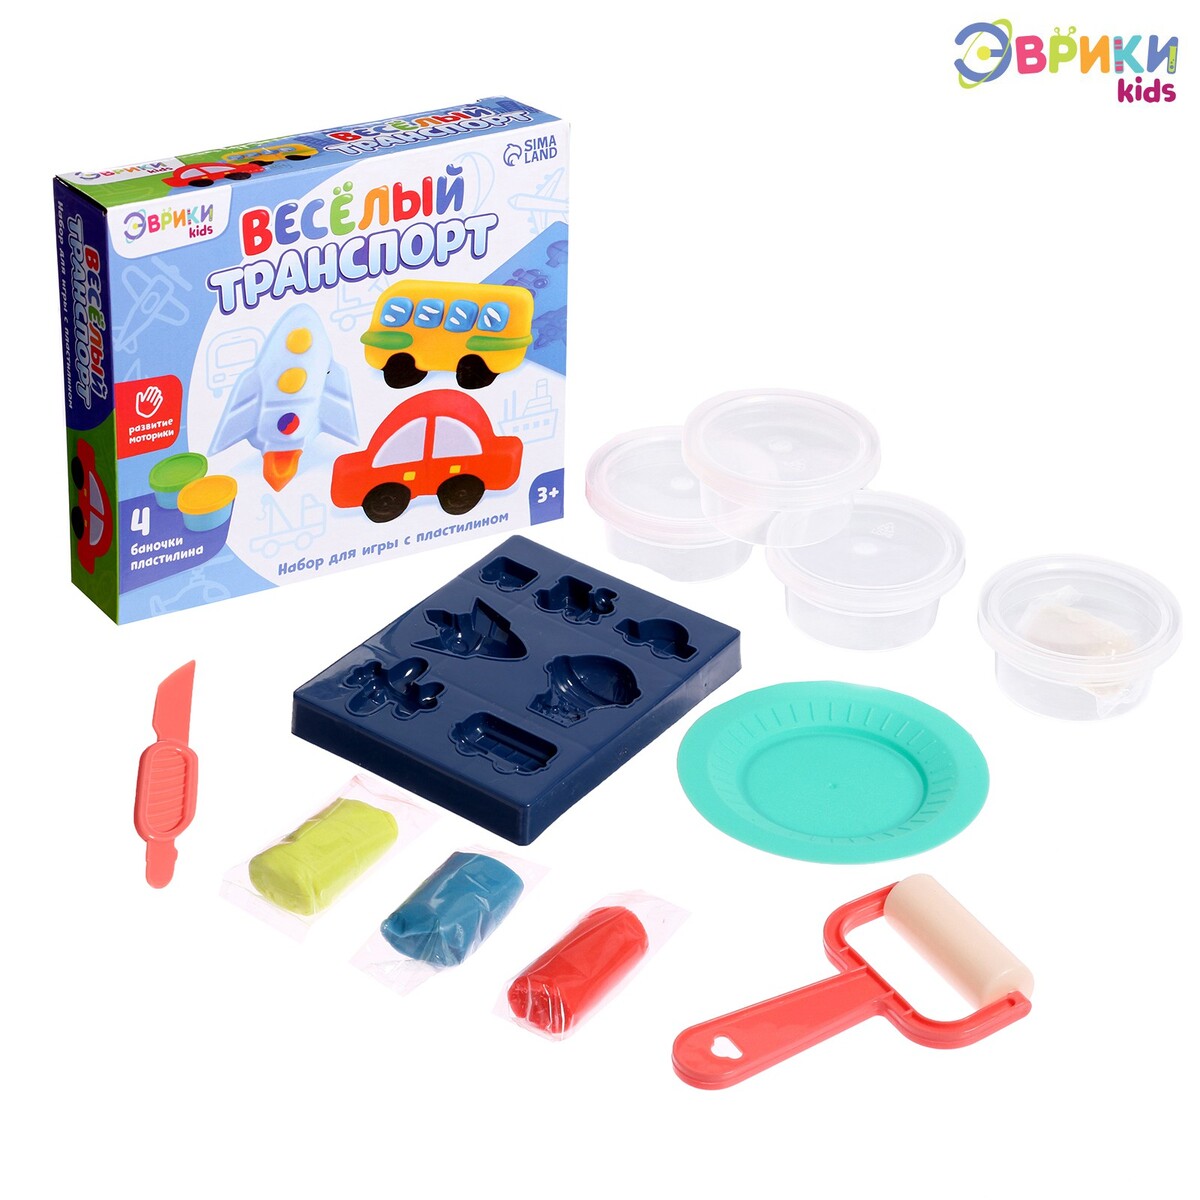 Набор для игры с пластилином игровой набор для лепки весёлые сладости маша и медведь 4 баночки с пластилином